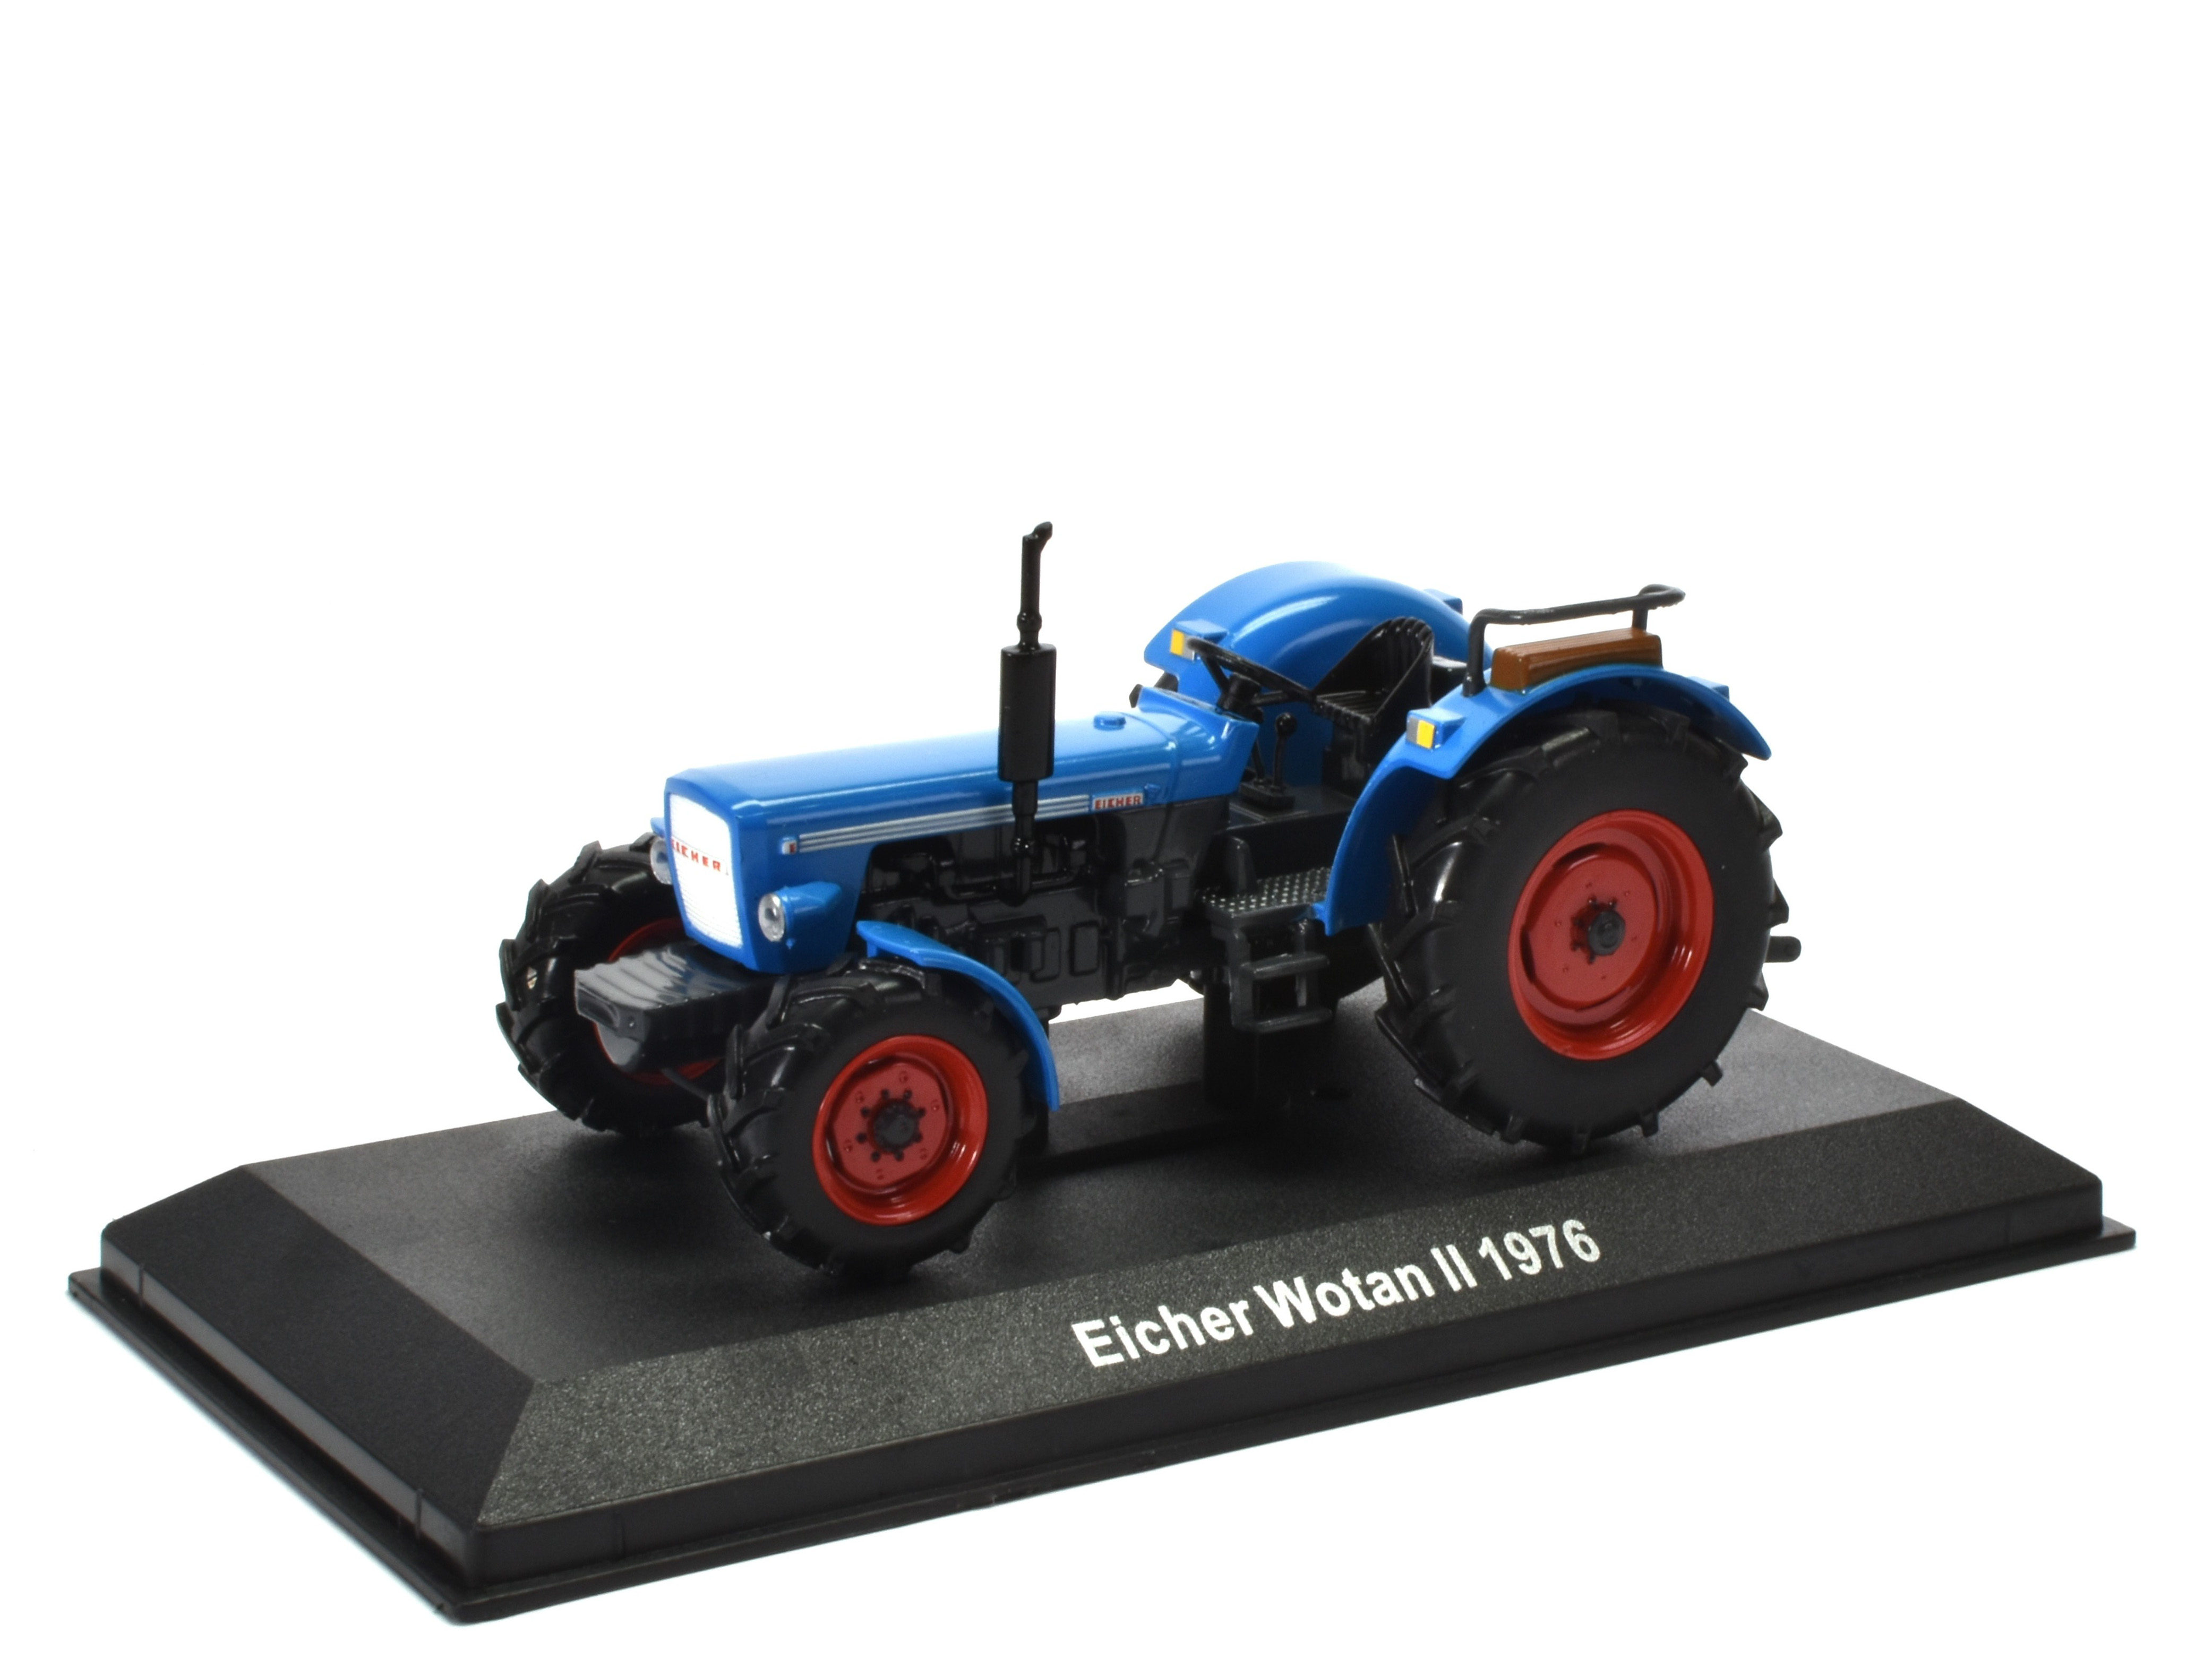 Eicher Wotan II Tractor - 1976